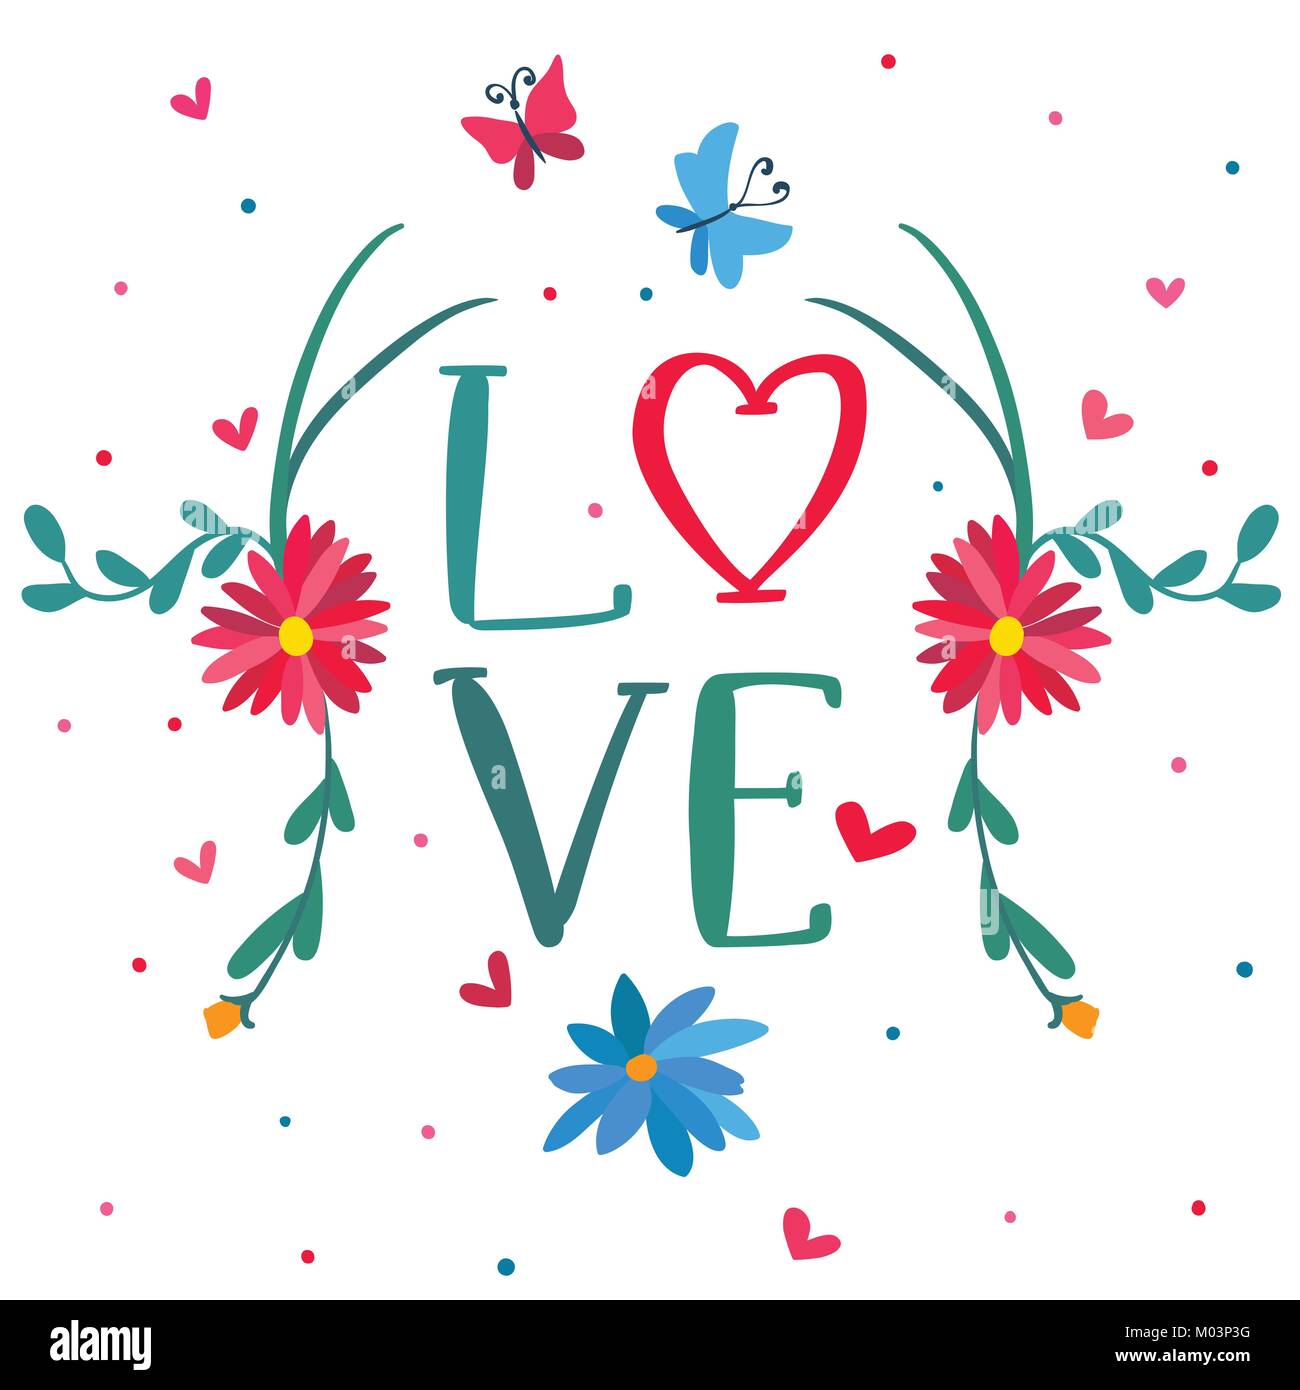 Tarjeta de felicitación el día de San Valentín con corazones, flores, mariposas y cartas escritas a mano Ilustración del Vector